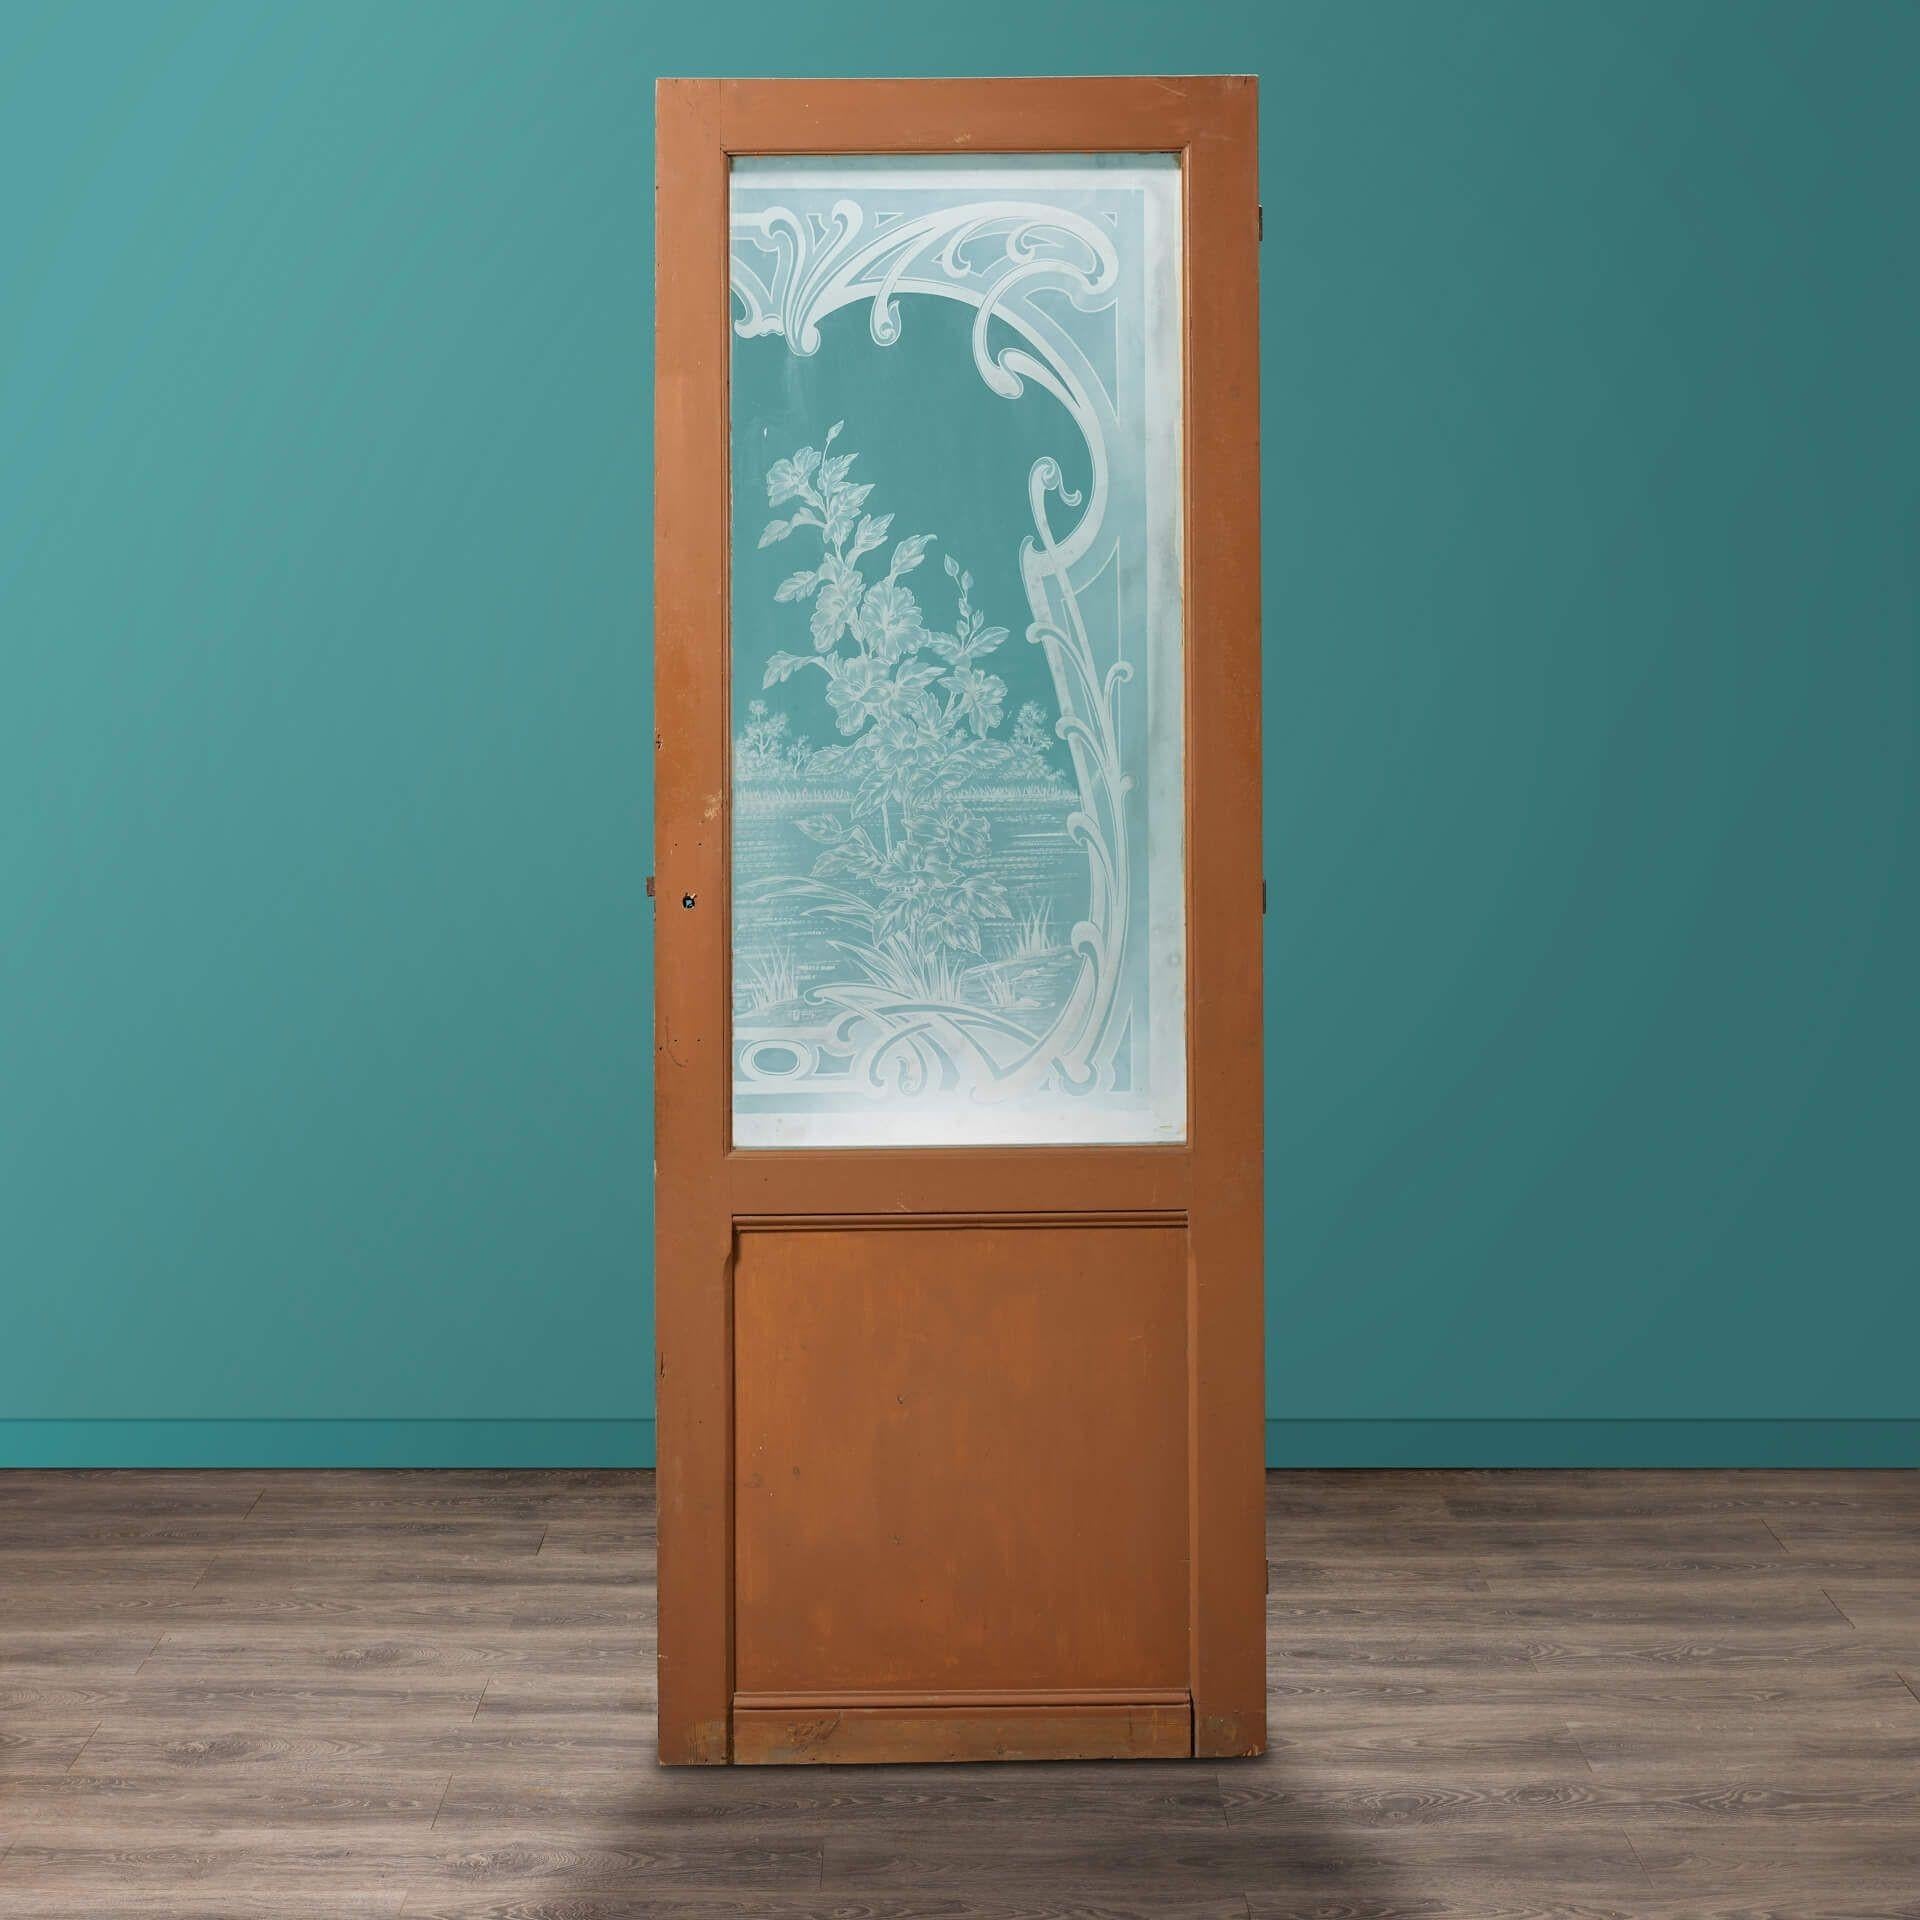 Eine hohe, antike, geätzte, verglaste Tür aus Pechkiefer. Die Haupttafel ist kunstvoll glasiert mit einer geätzten Flussuferszene, die Blumen, Sträucher und umliegende Schriftrollen zeigt.

Diese exquisite Tür im Louis-Stil mit lackiertem